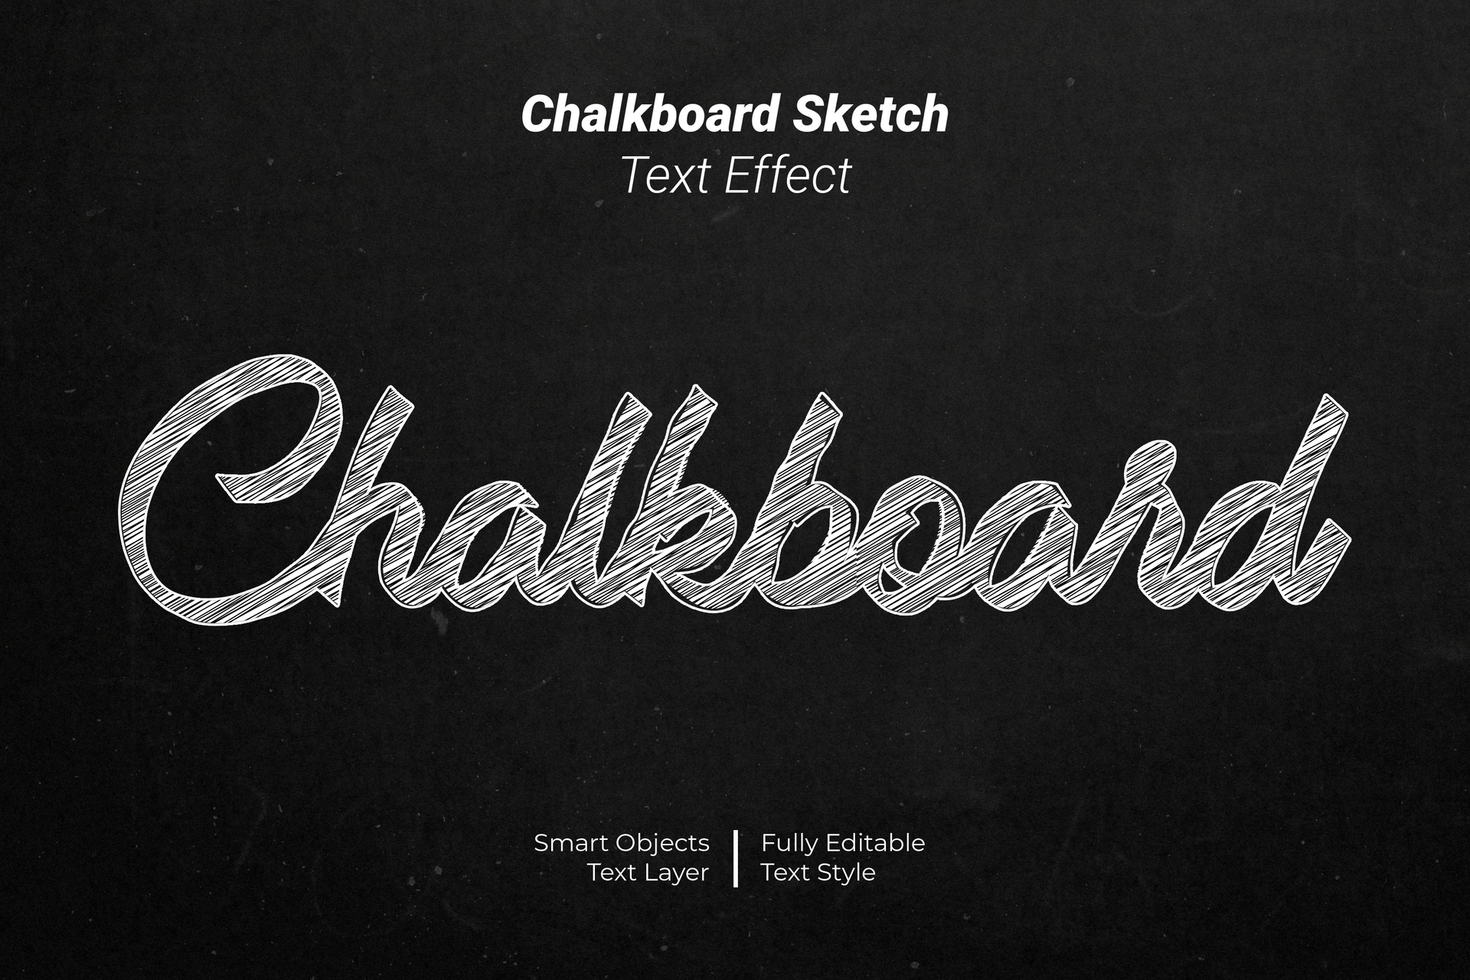 Chalkboard Sketch Text Styles Effect psd